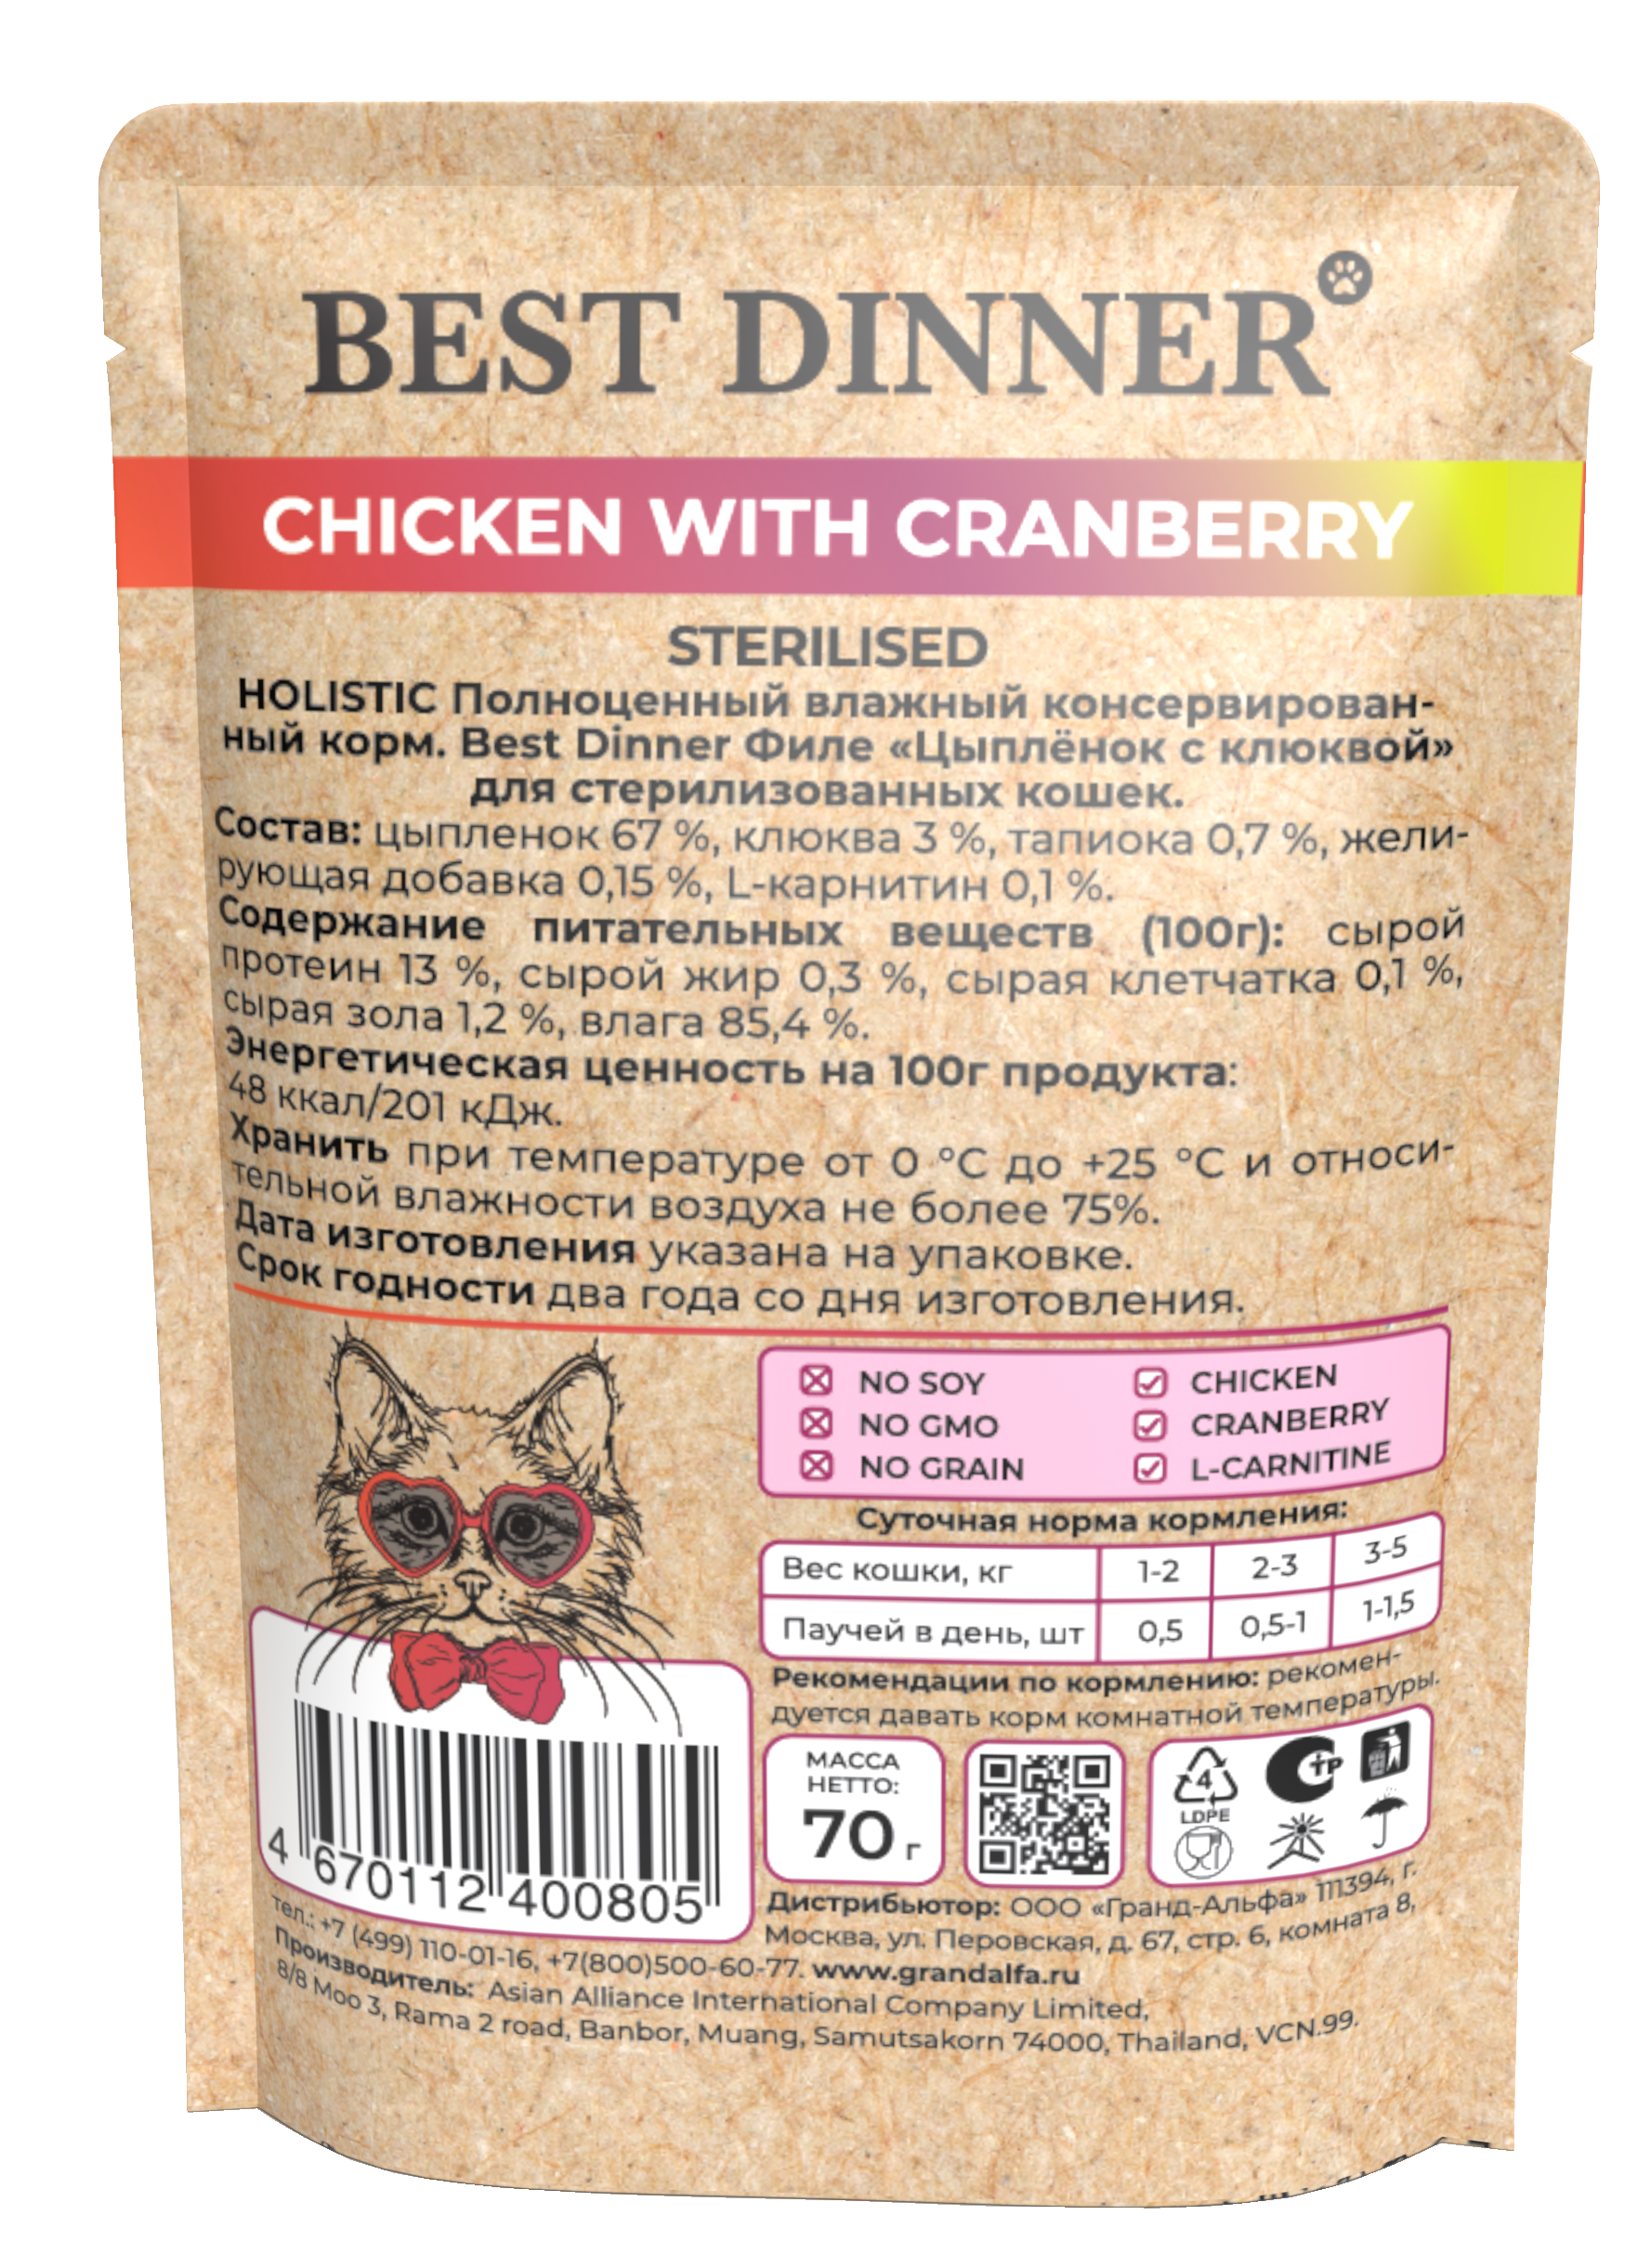 Влажный корм BEST DINNER для стерилизованных кошек Holistic цыпленок с клюквой в соусе